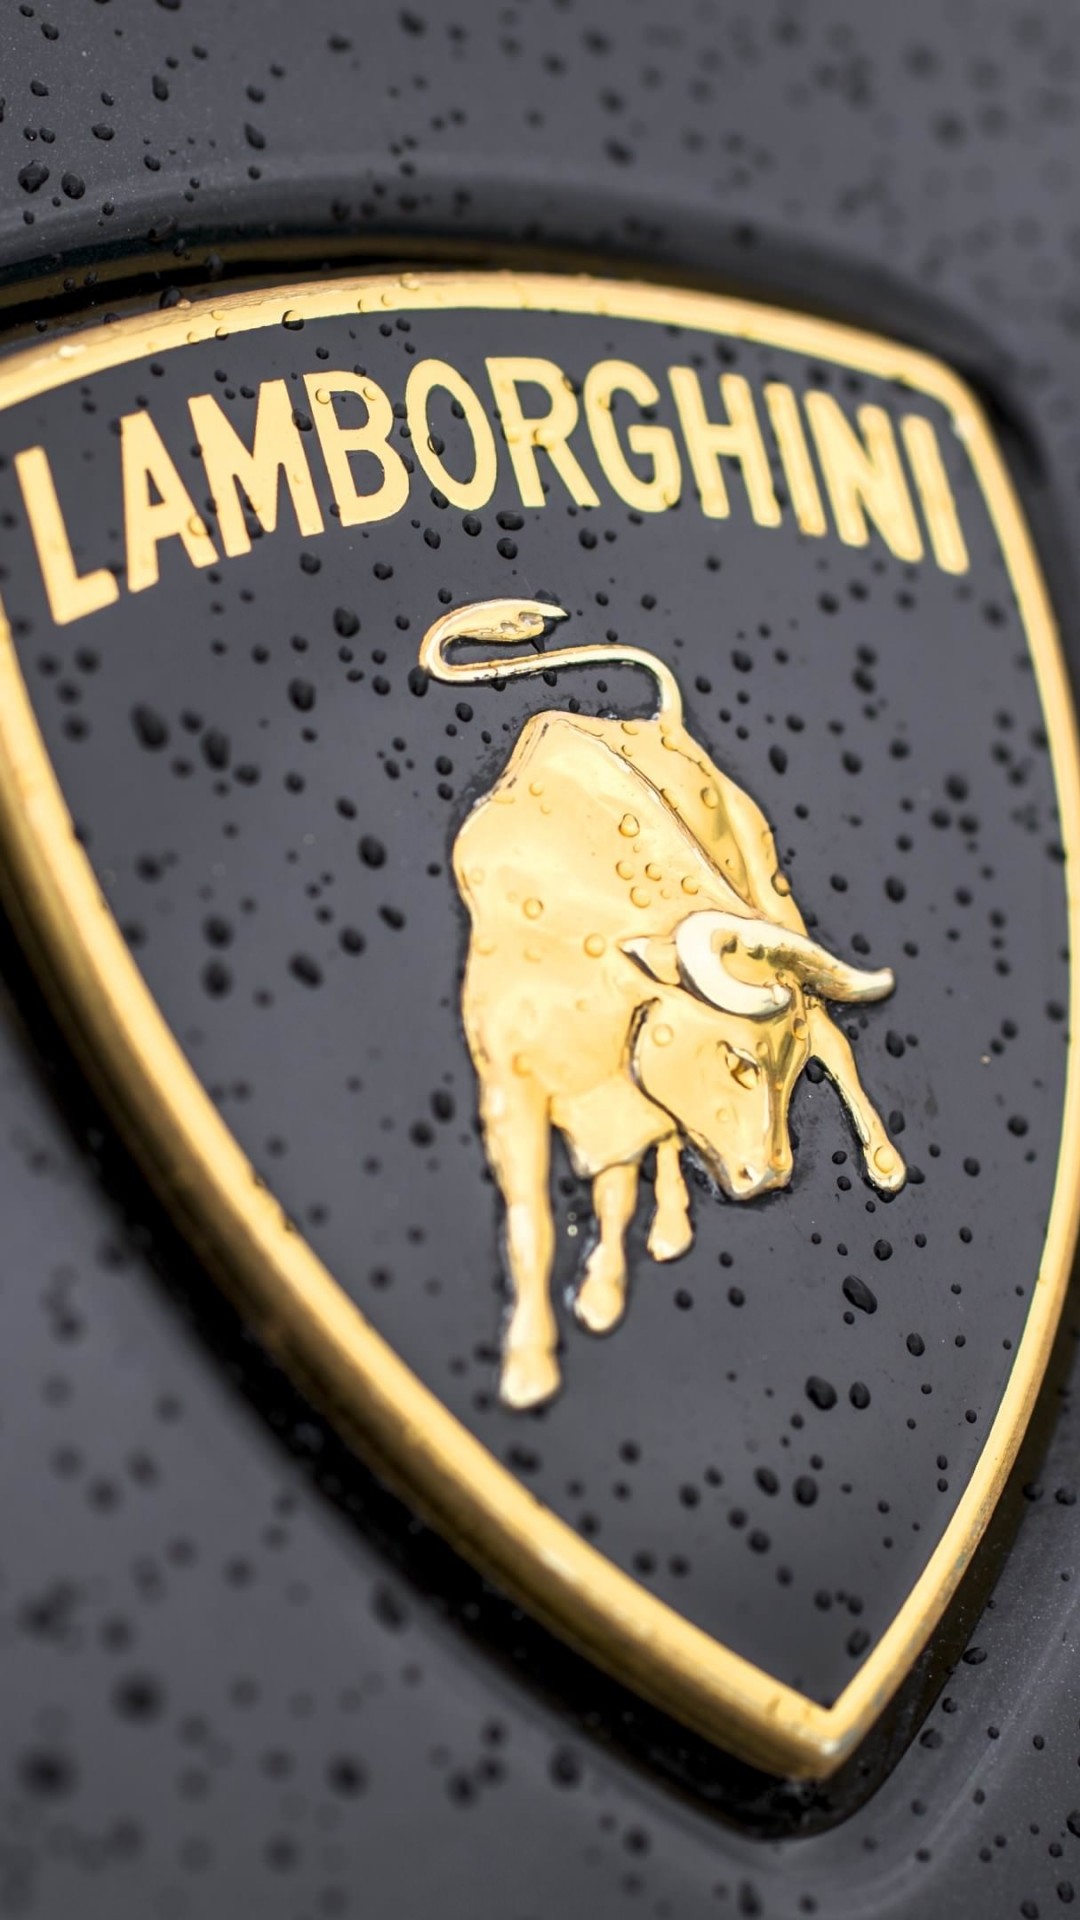 Lamborghini Logo Wallpaper for SAMSUNG Galaxy S5